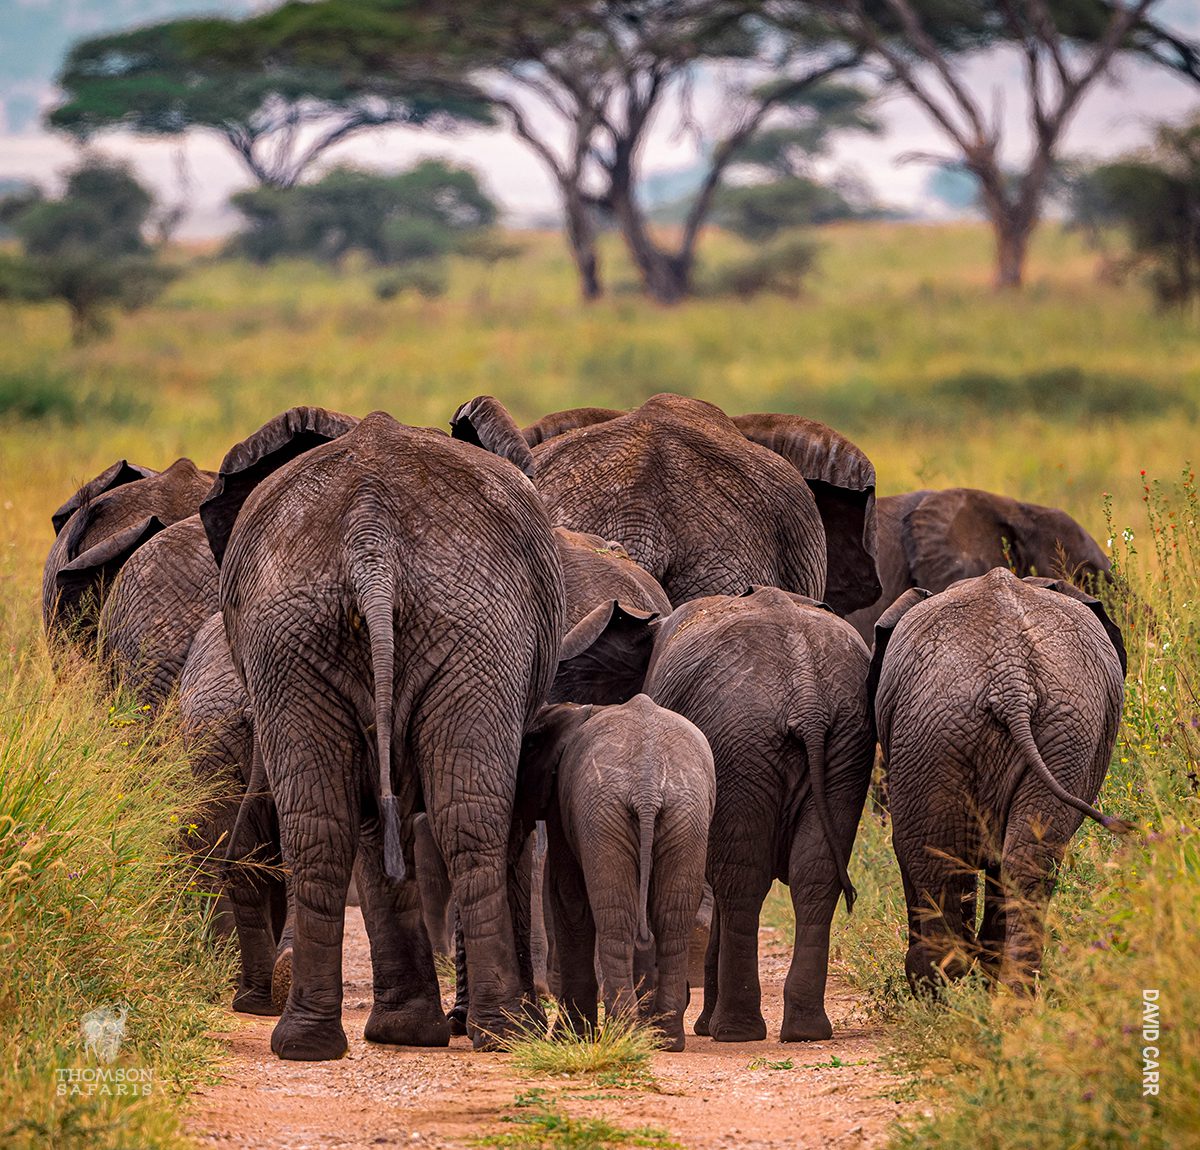 herd of elephants on safari in tanzania